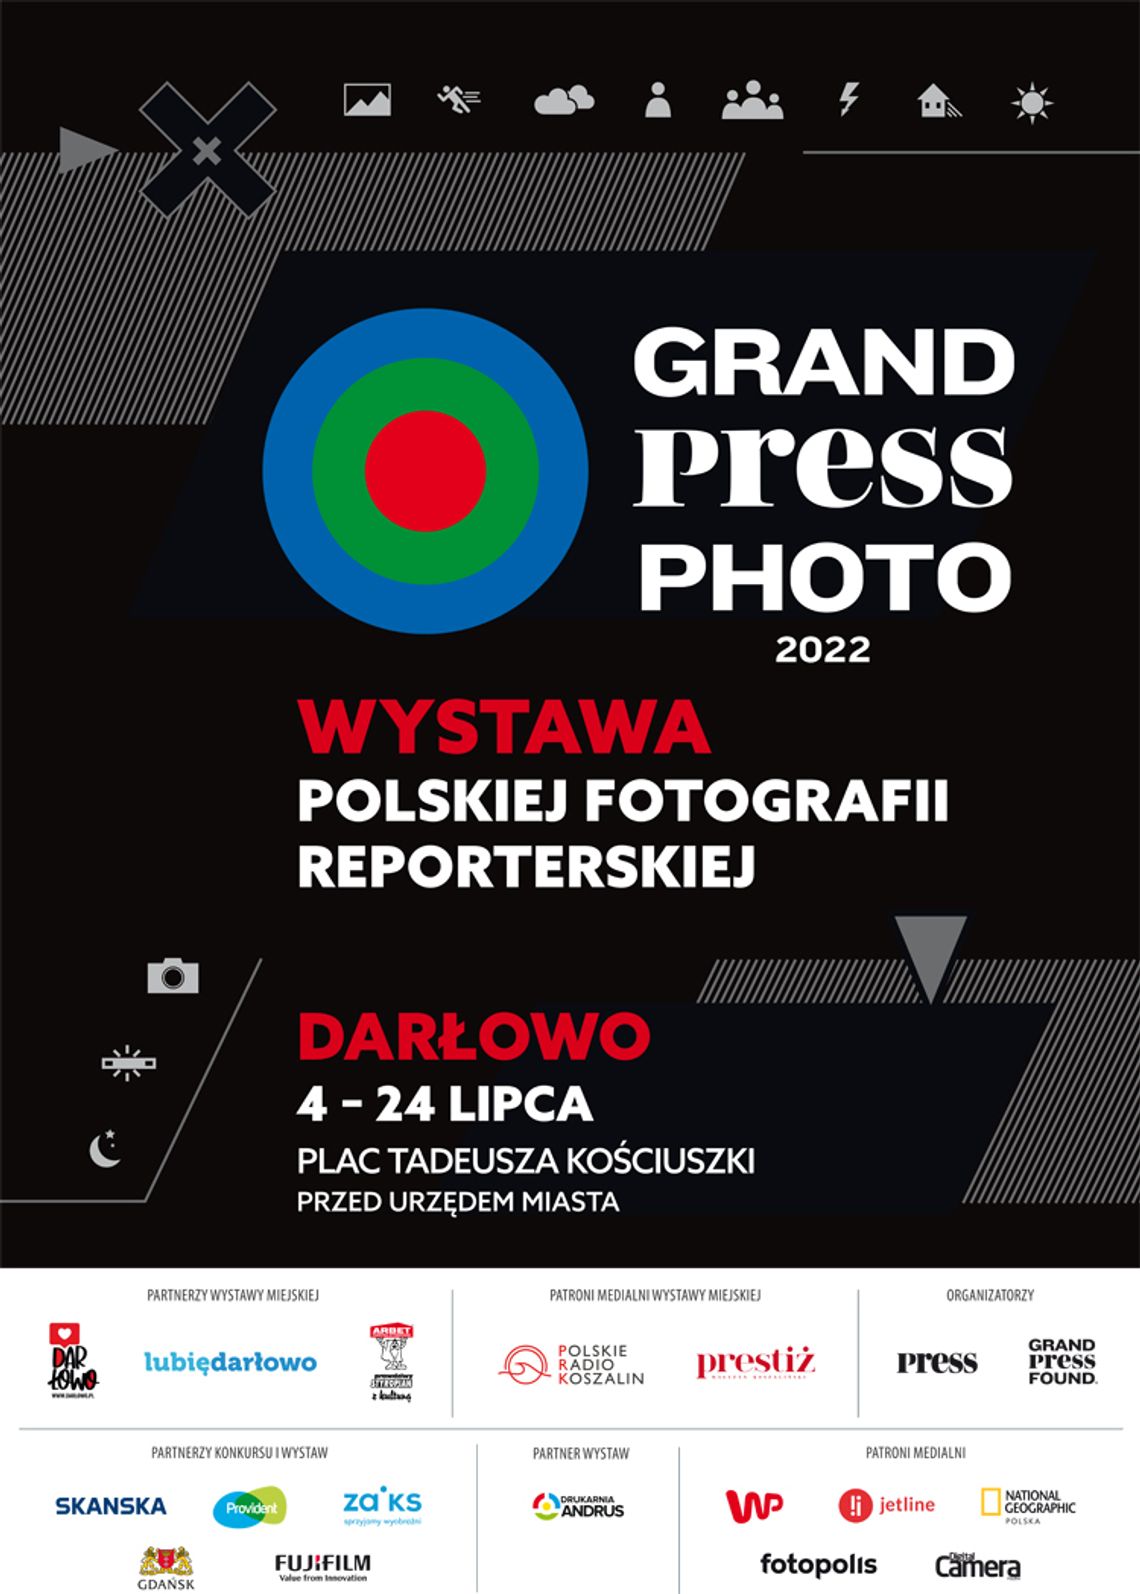 Darłowo: Wystawa Grand Press Photo 2022